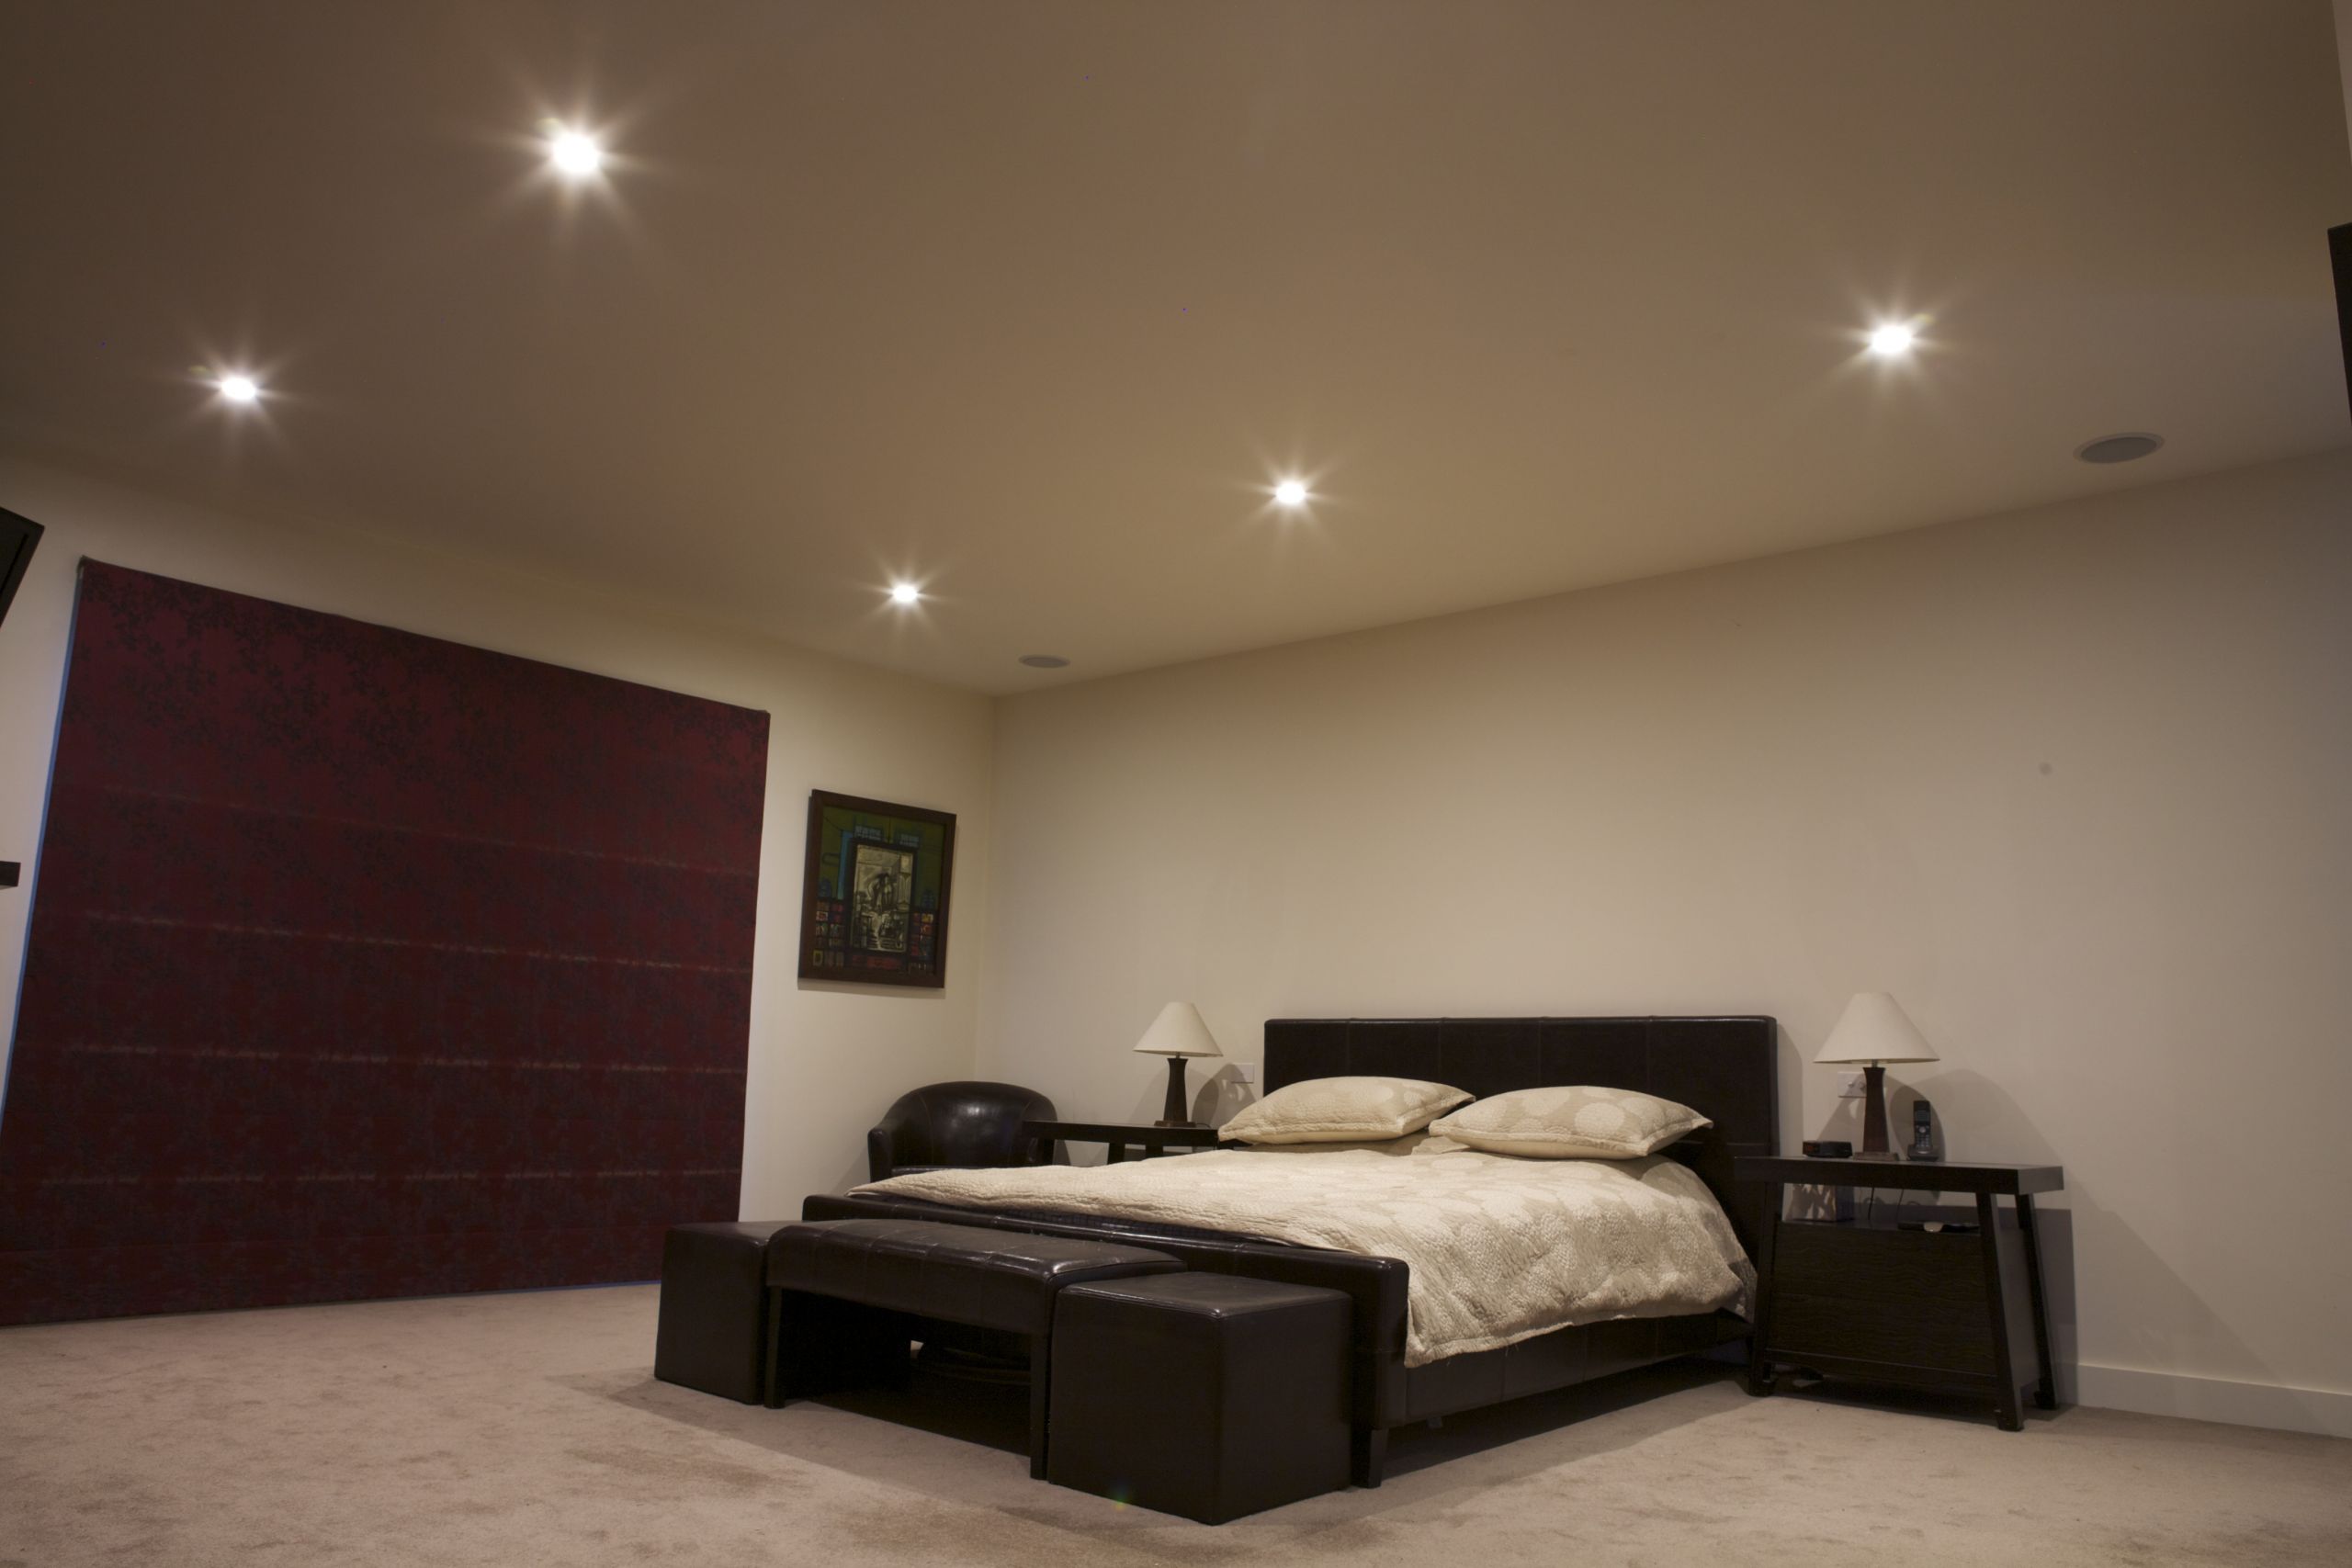 Led Bedroom Ceiling Lights
 70mm or 90mm Downlights Choosing LED lights